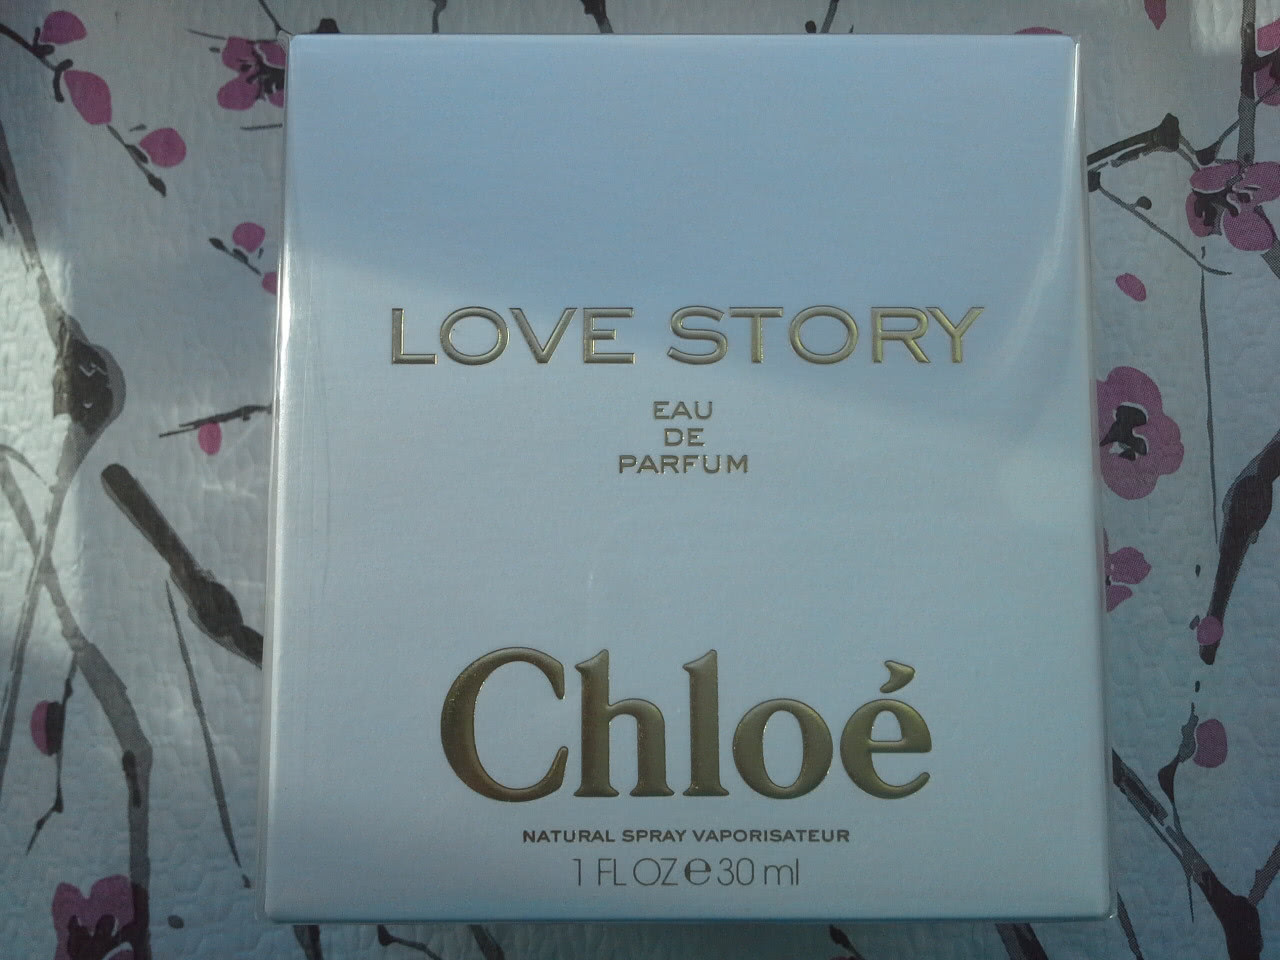 Chloé Love story eau de parfum 30ml